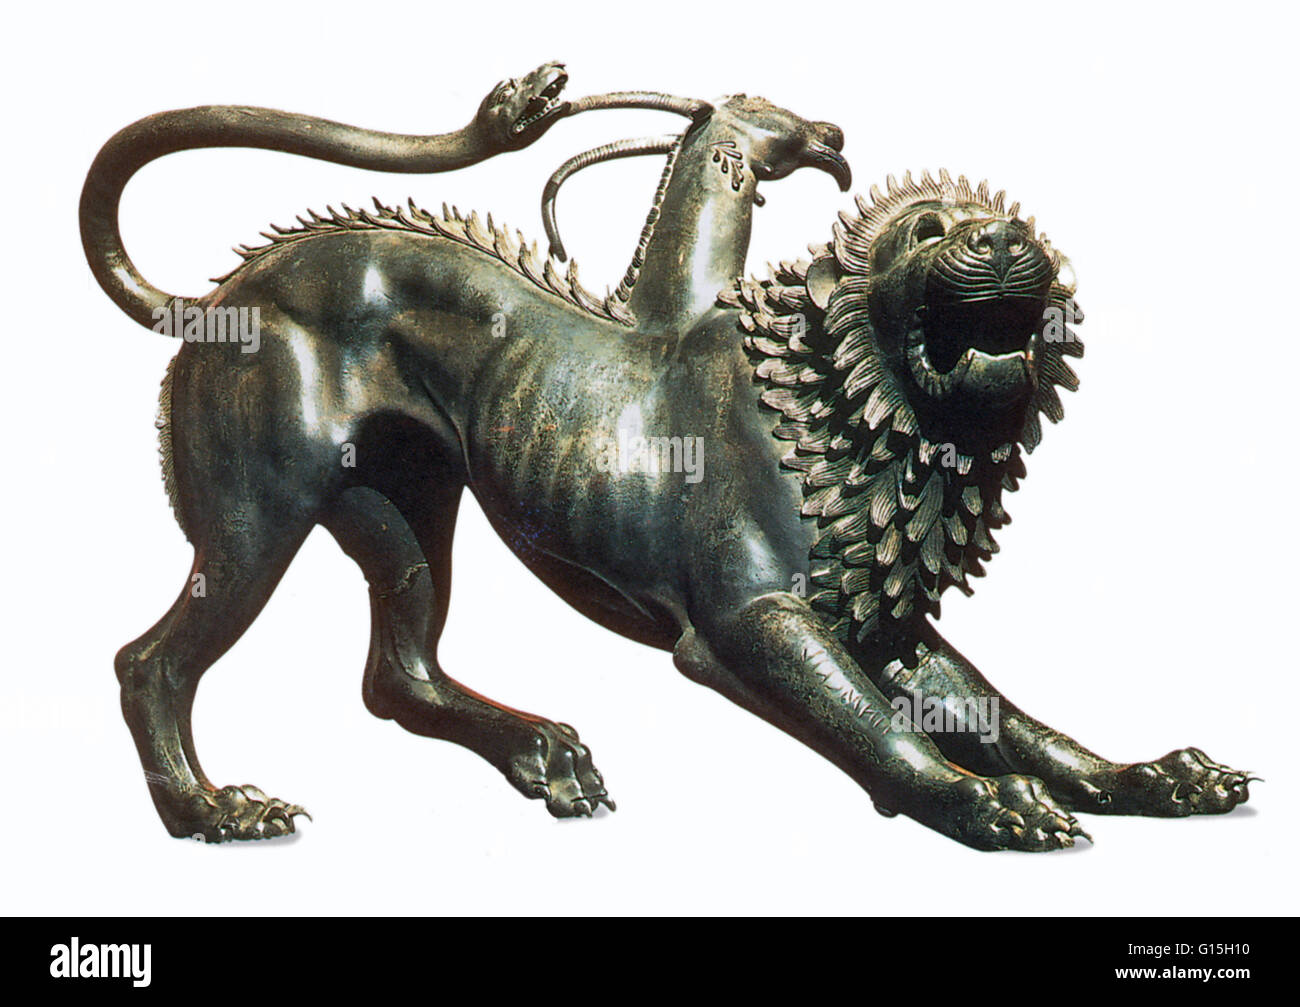 Die Chimäre von Arezzo, 5. Jahrhundert v. Chr. Bronze Skulptur, ist eines der bekanntesten Beispiele der etruskischen Kunst. Die Chimäre ist eine Kreatur, die Zugehörigkeit zur griechischen Mythologie, bestehend aus mehreren Tierteilen (Löwe, Ziege und Schlange). Stockfoto